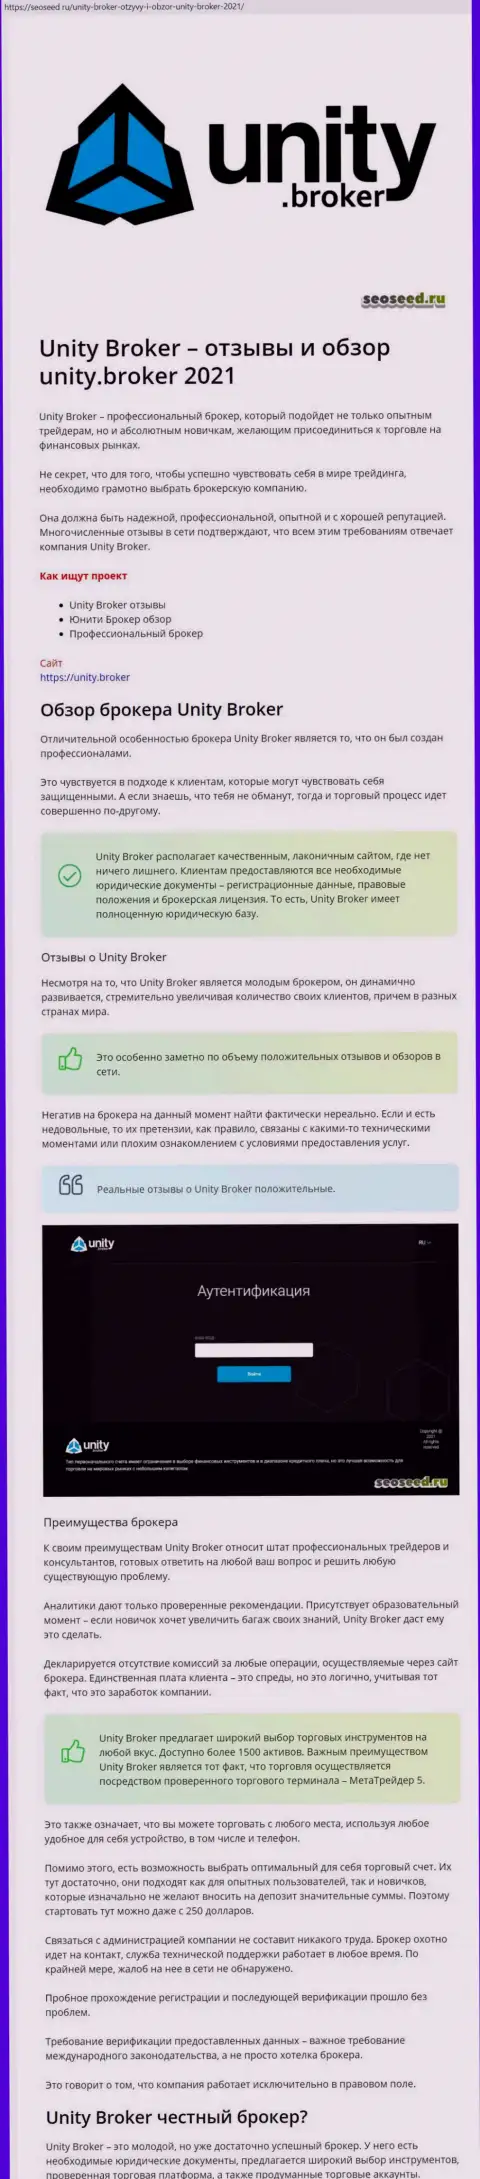 Материал о Форекс брокерской площадке Unity Broker на онлайн-площадке seoseed ru